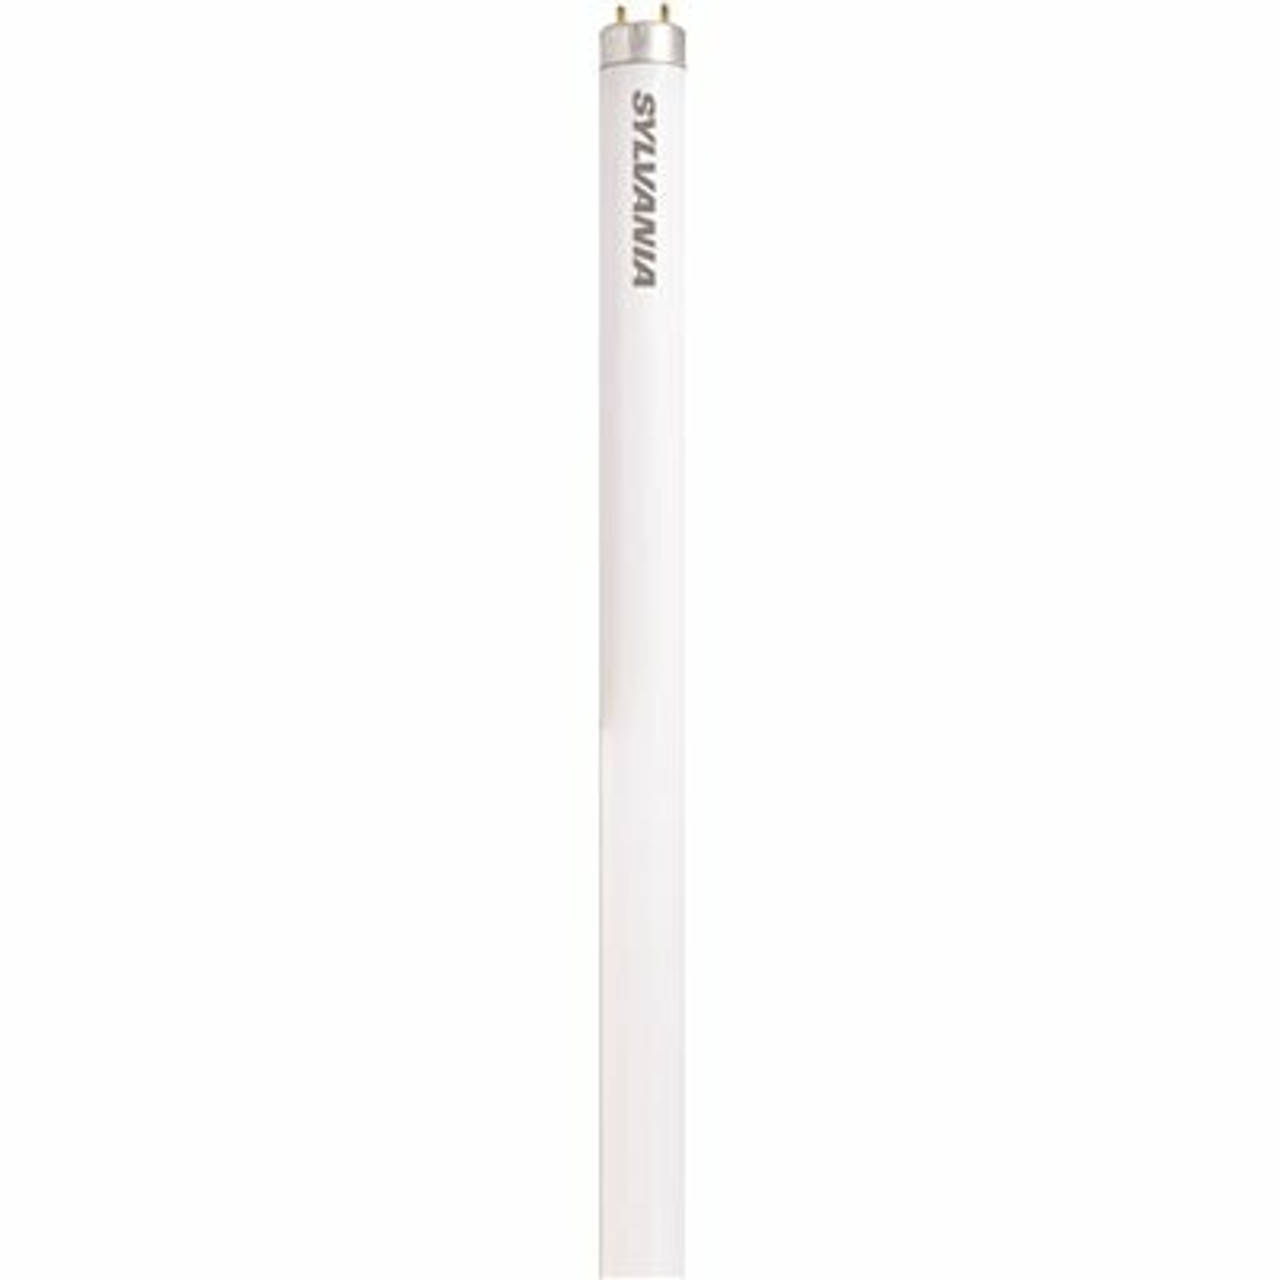 Sylvania 15 In. 14-Watt Linear T12 Fluorescent Tube Light Bulb, Cool White (1-Bulb)